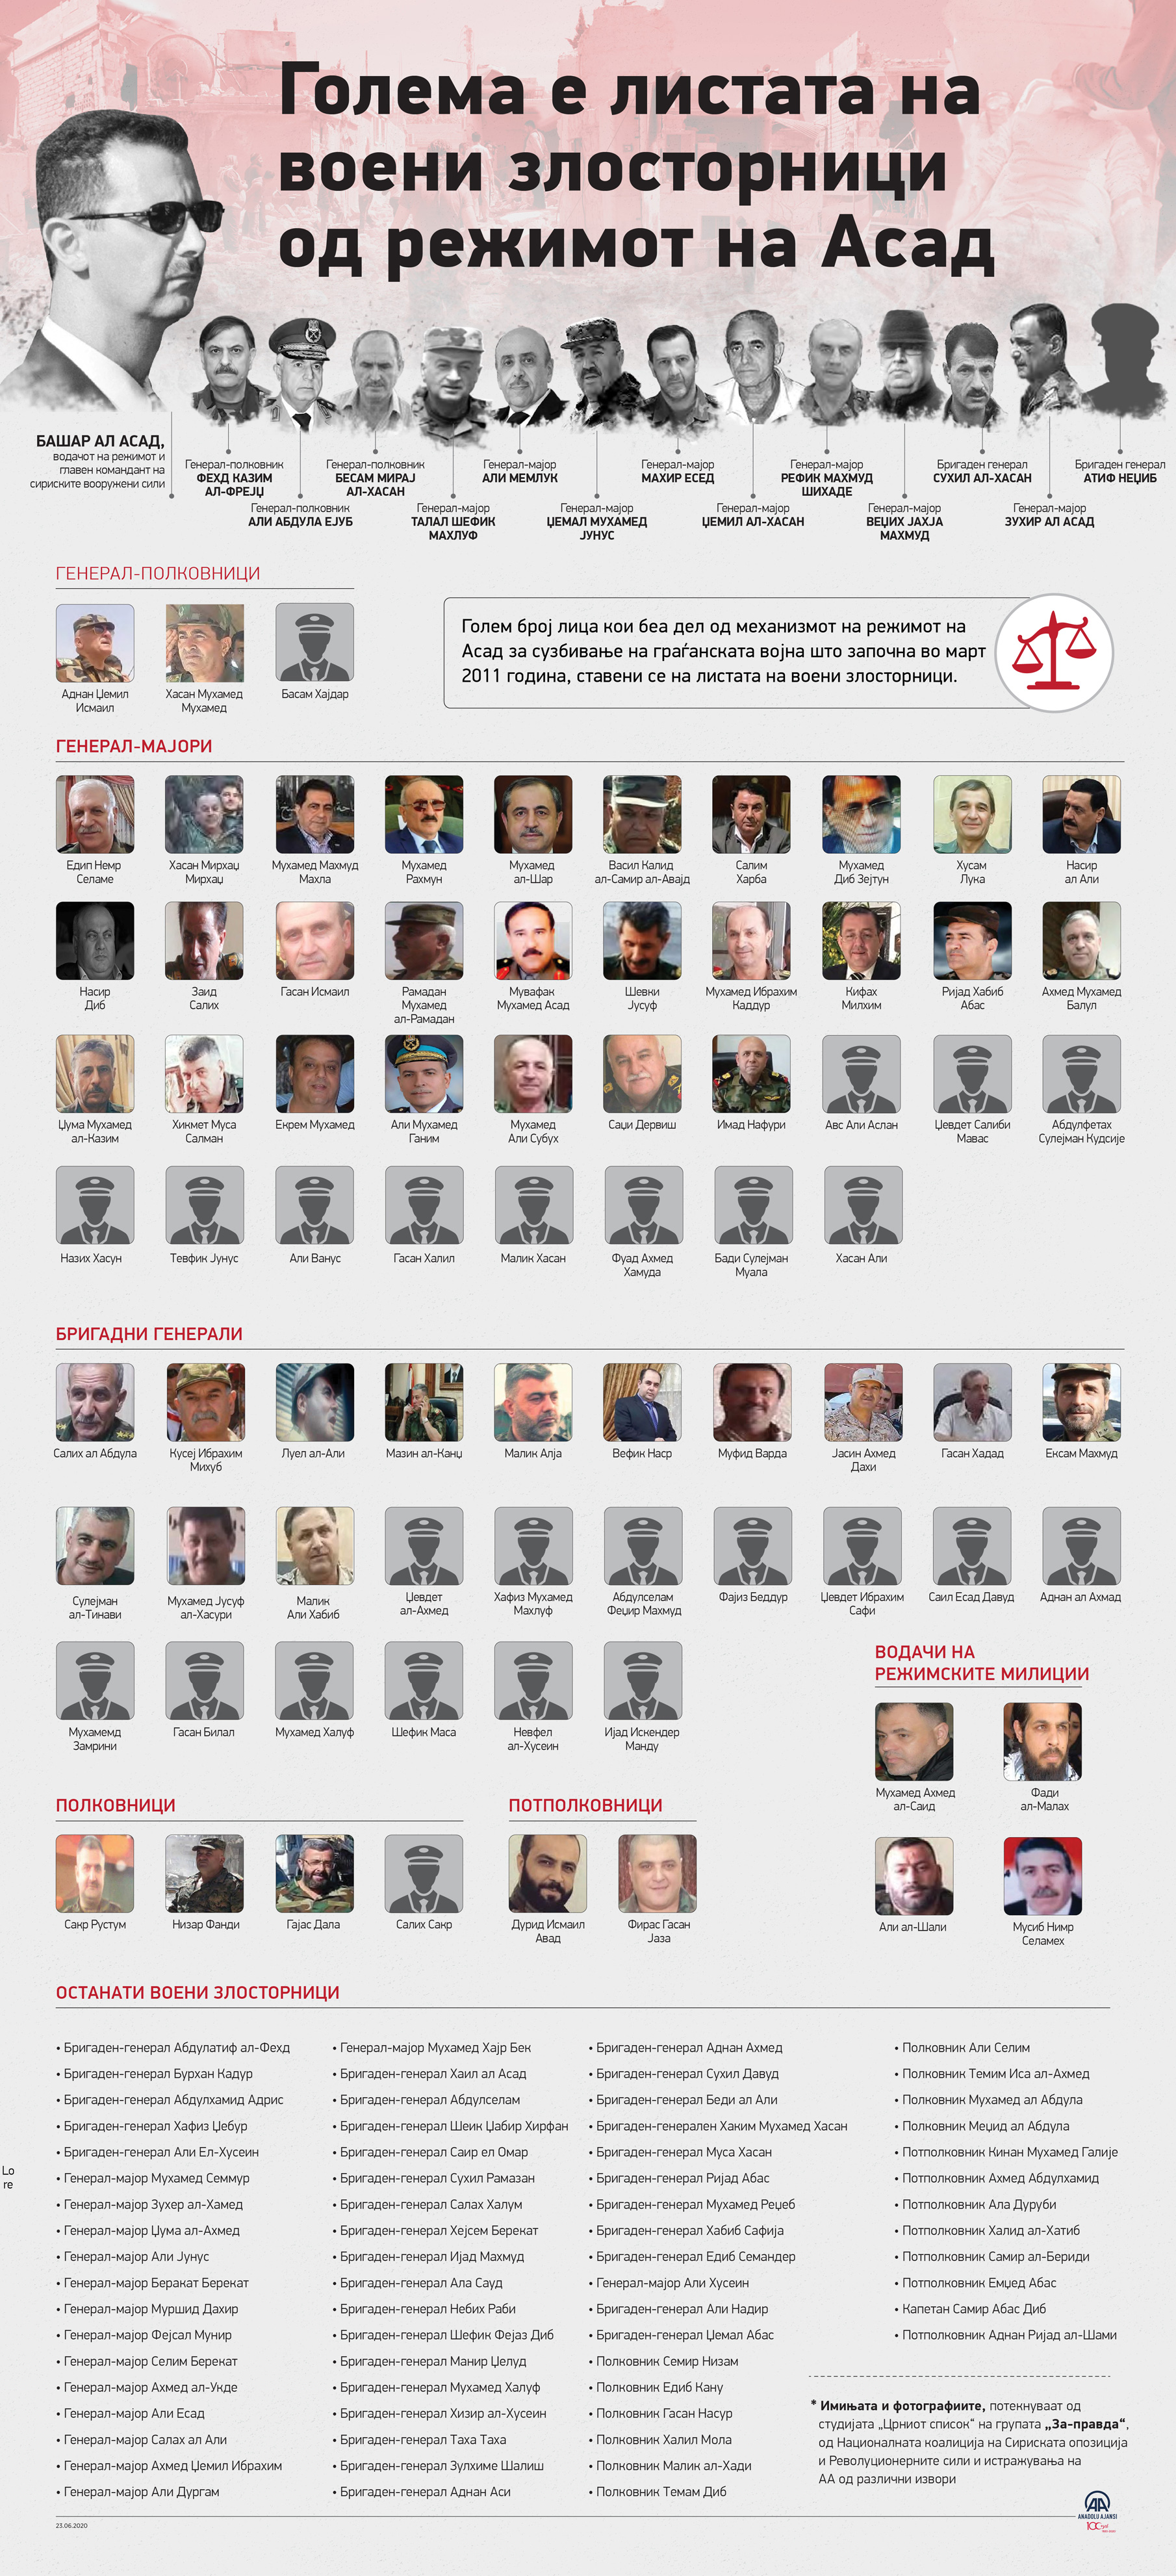 Голема е листата на воени злосторници од режимот на Асад